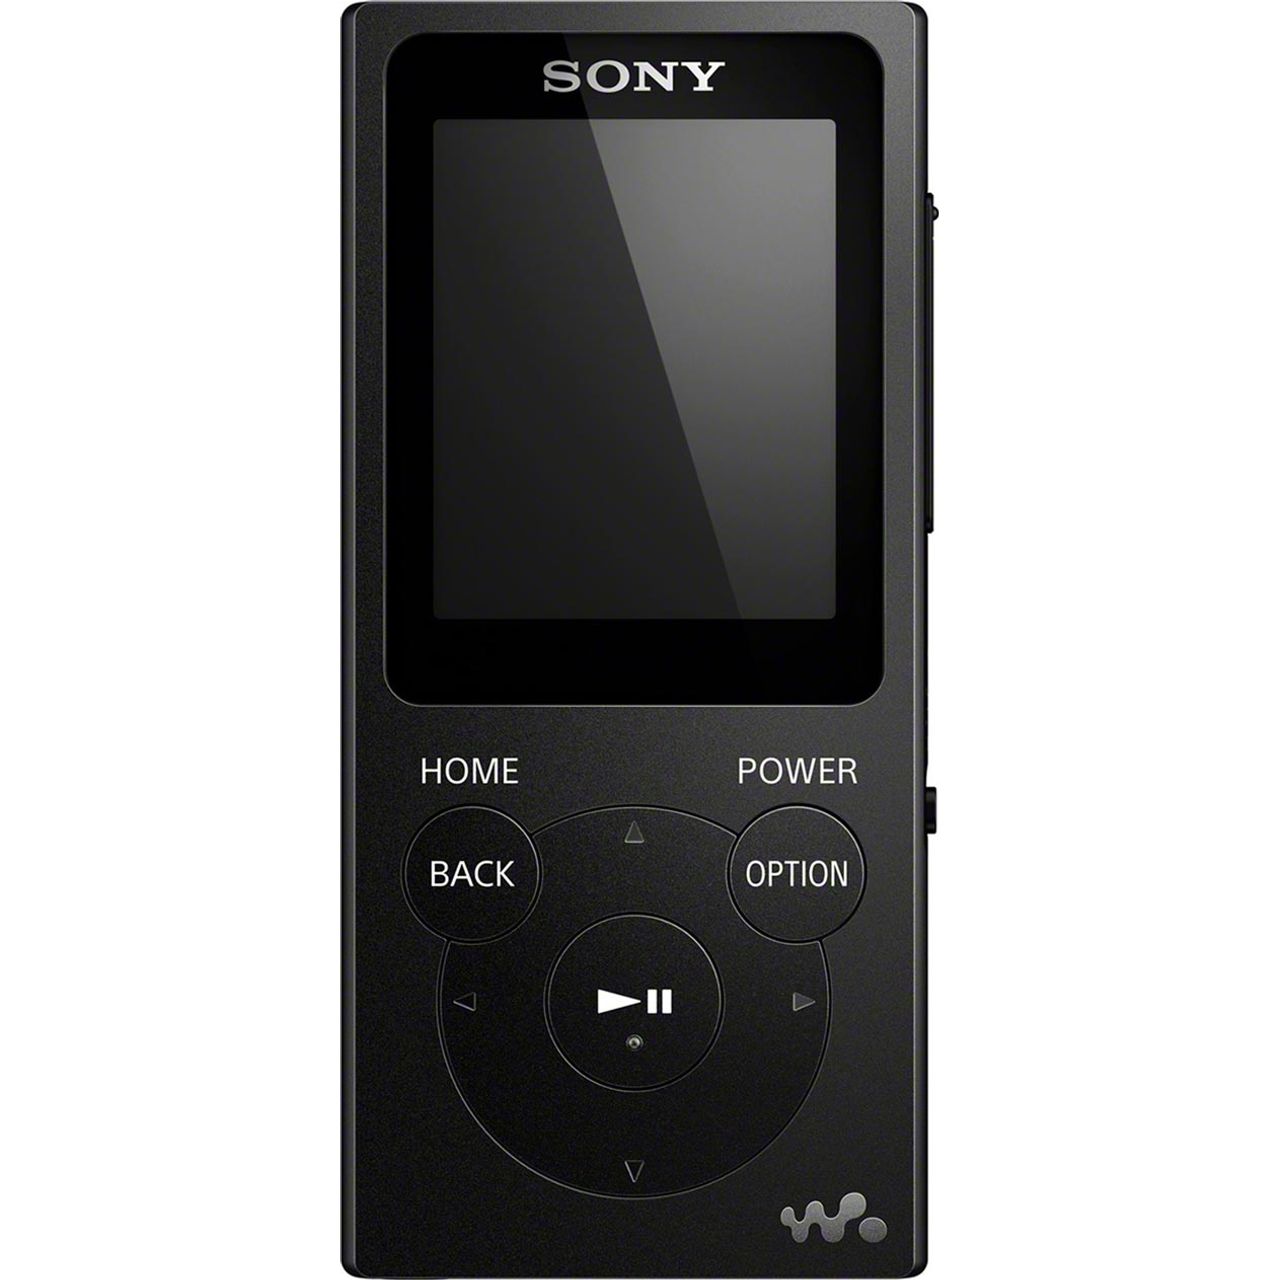 Sony NW-E394 Walkman MP3 Player with FM Radio Black Sony ...